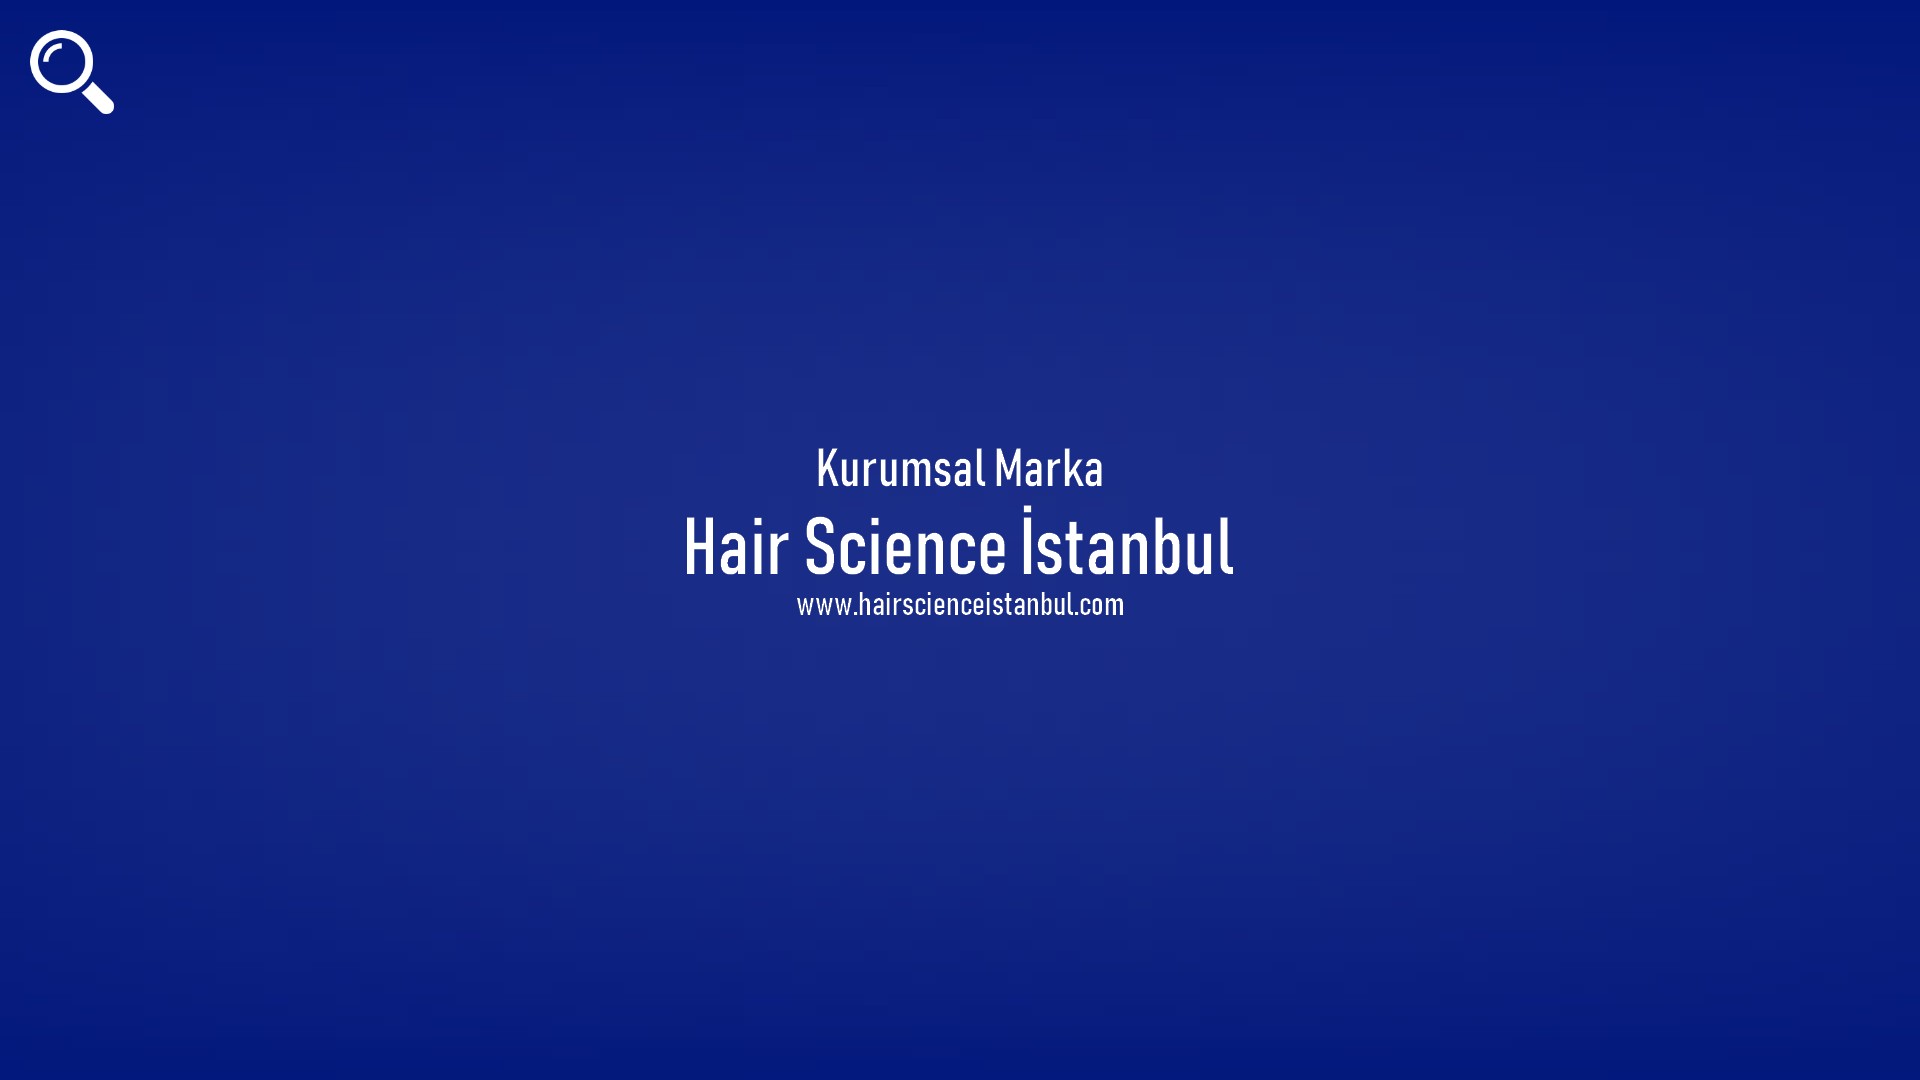 Hair Science İstanbul başlıklı içeriğin resmi